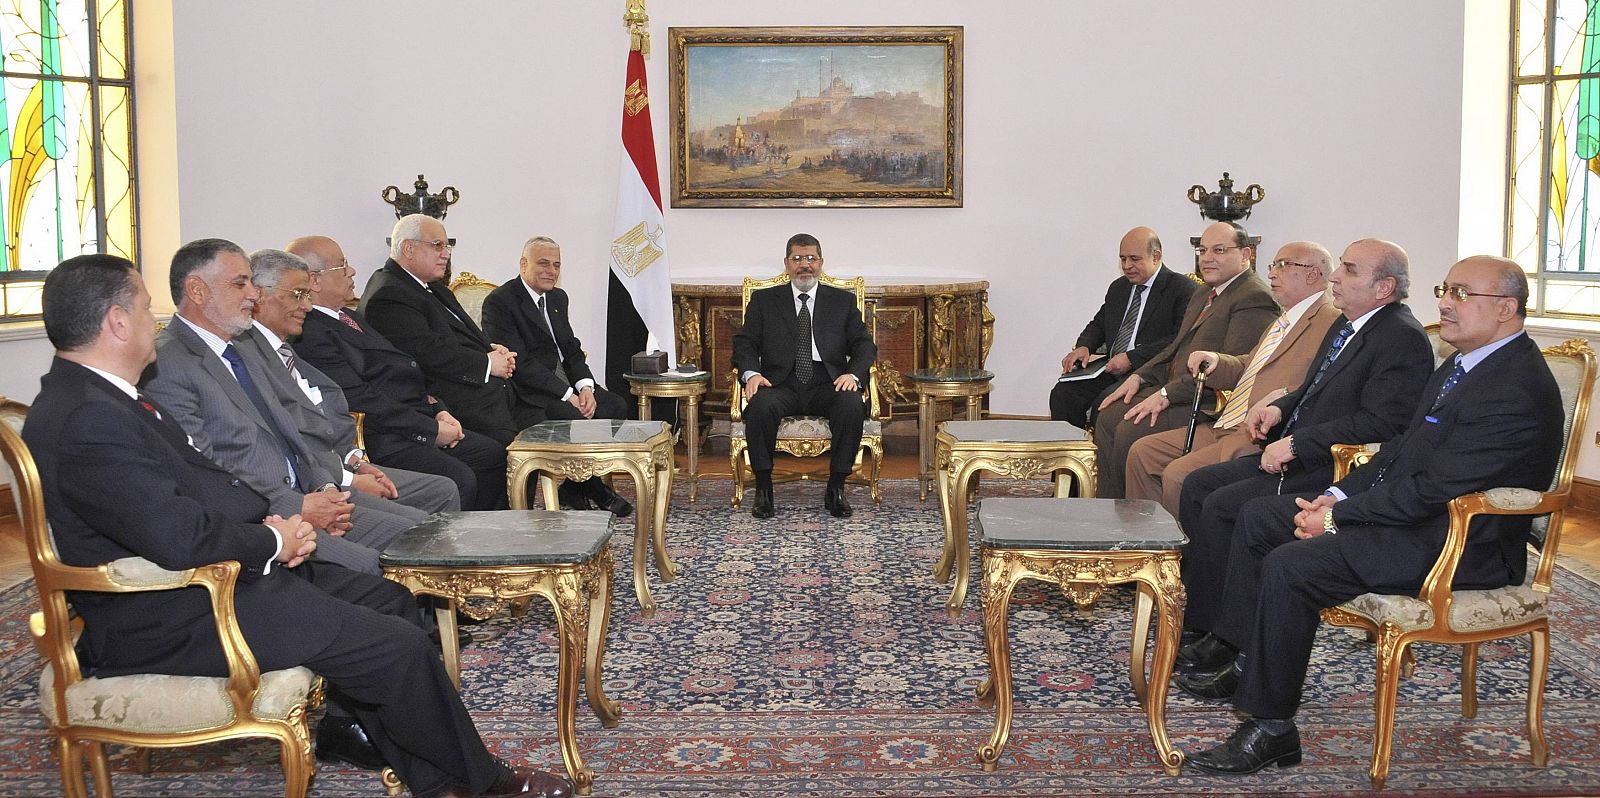 El presidente de Egipto, Mohamed Morsi,  reunido con el Consejo Judicial Supremo y el fiscal general para debatir la reforma de la ley judicial